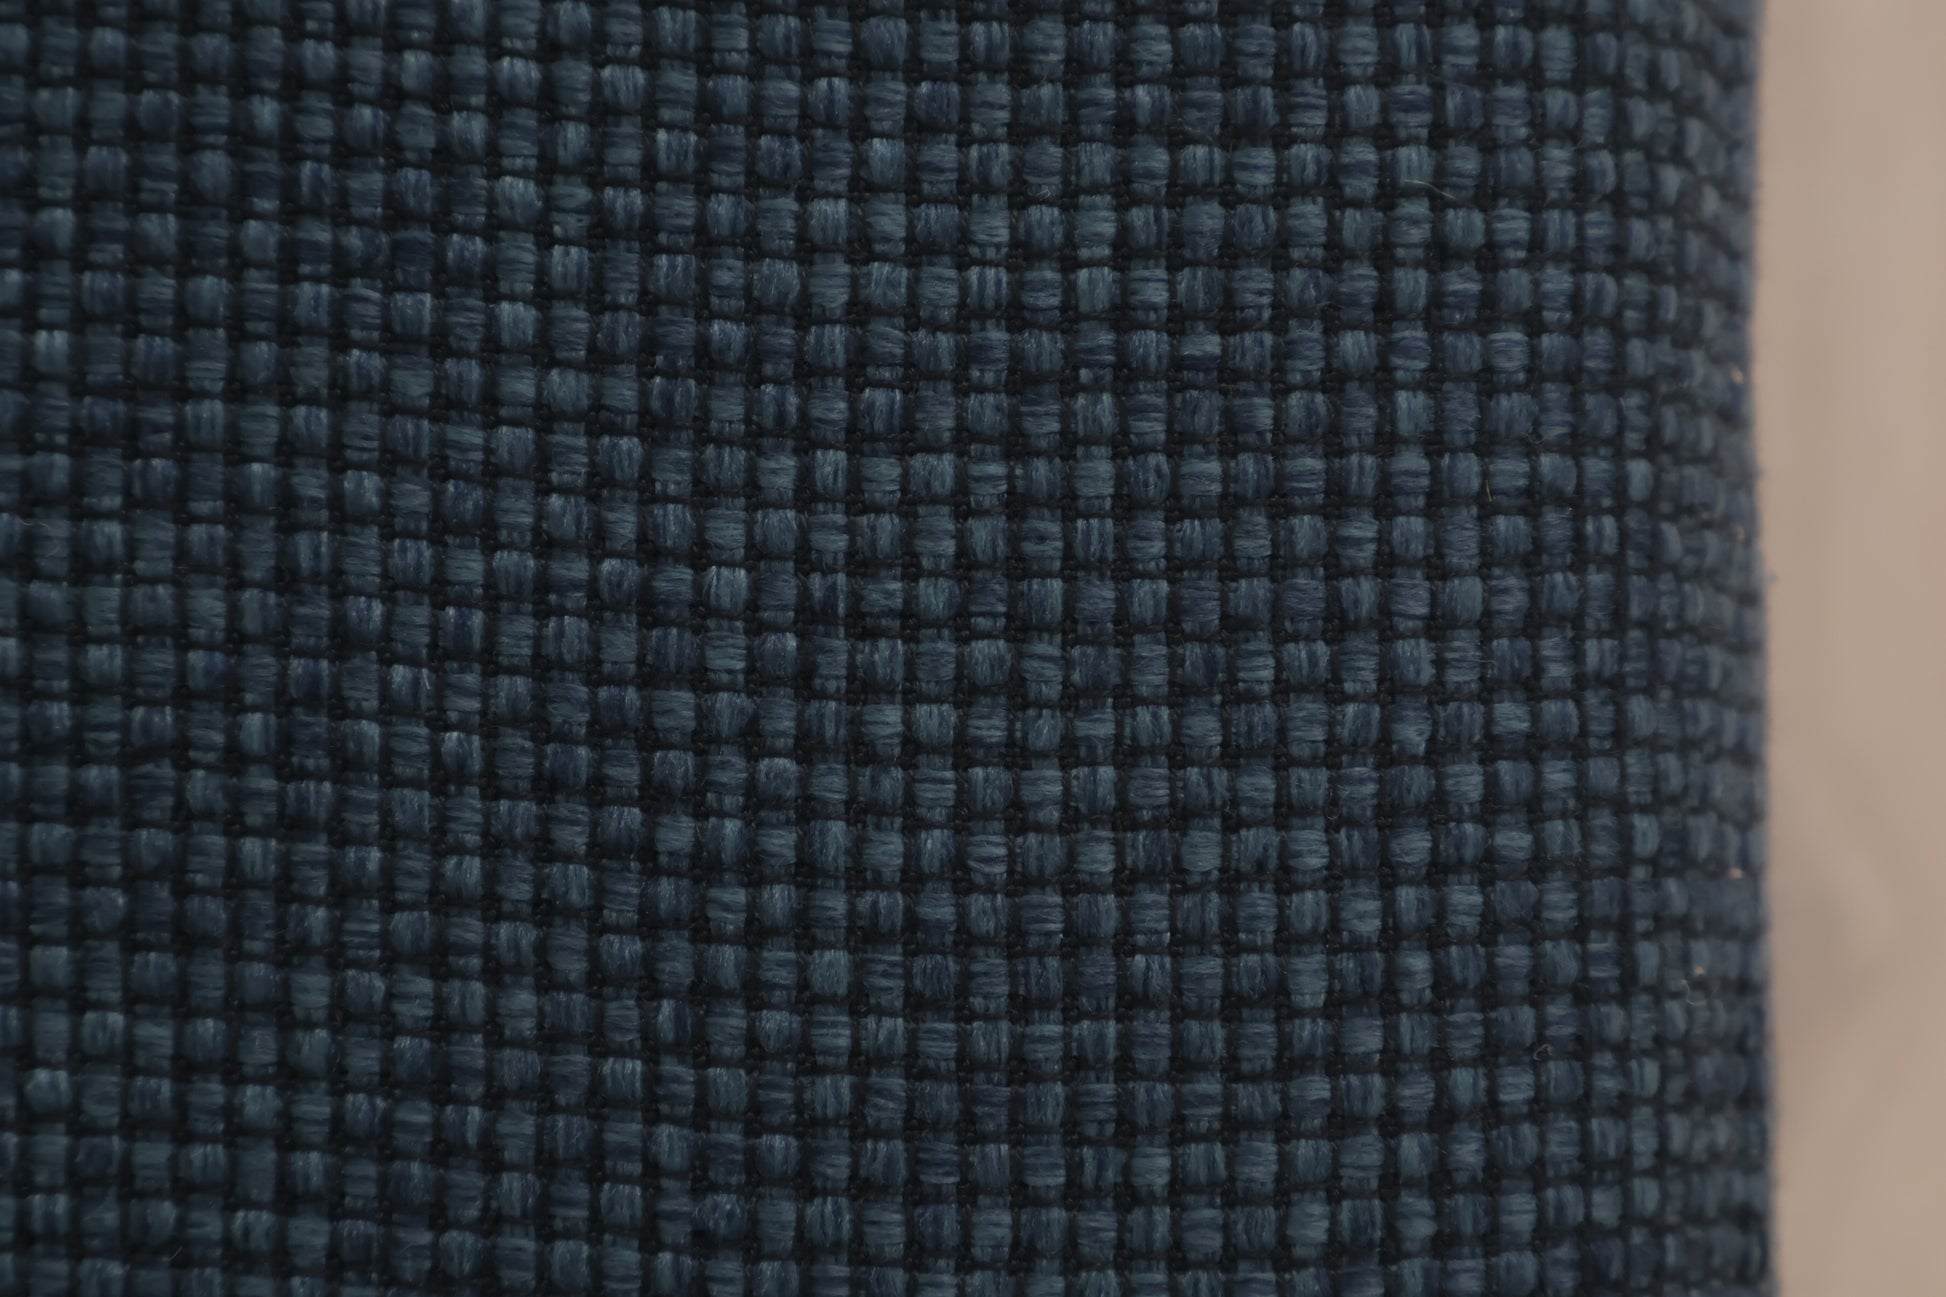 Nyrenset | Blå Bolia Scandinavia 2-seter sofa